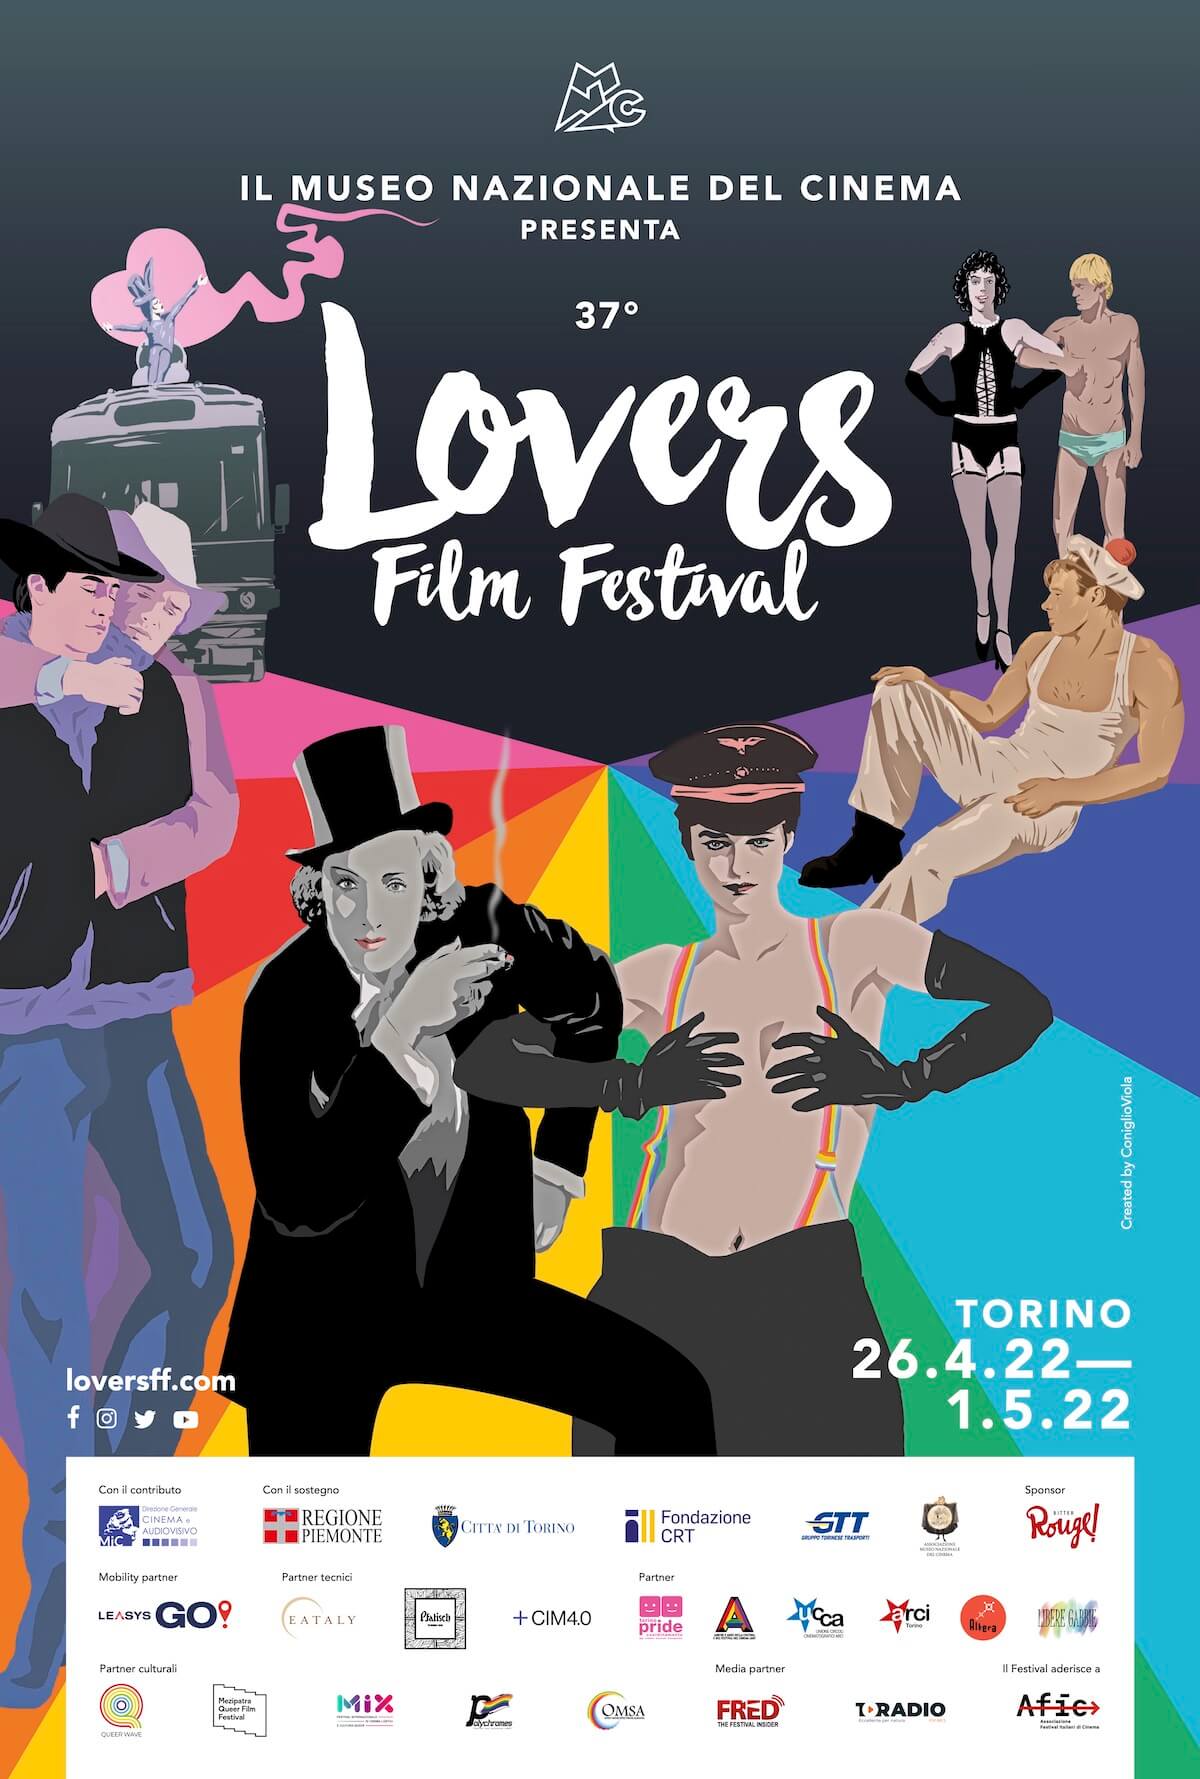 Lovers Film Festival 2022 di Torino, il programma ufficiale. Michele Bravi tra gli ospiti - 37° Lovers Film Festival - Gay.it